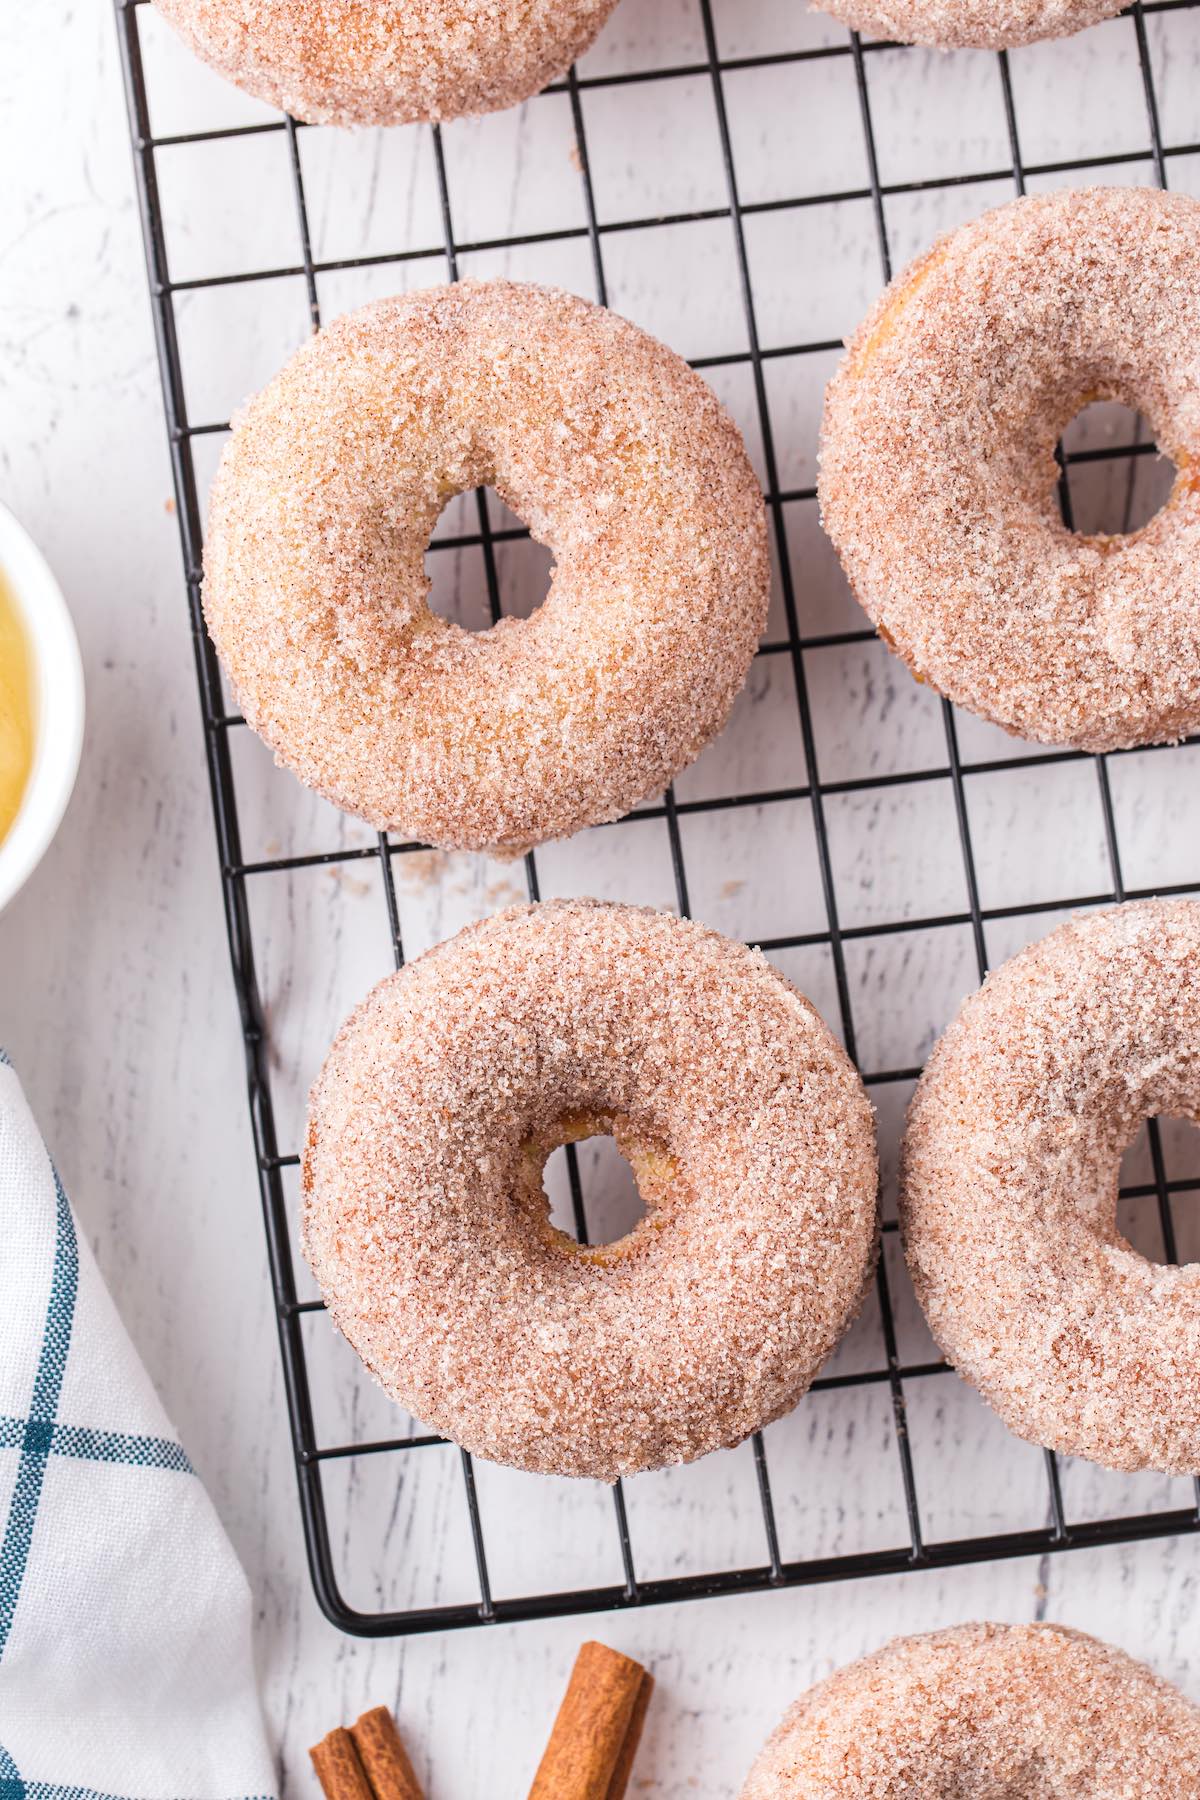 Baked Donuts (Cinnamon Sugar)